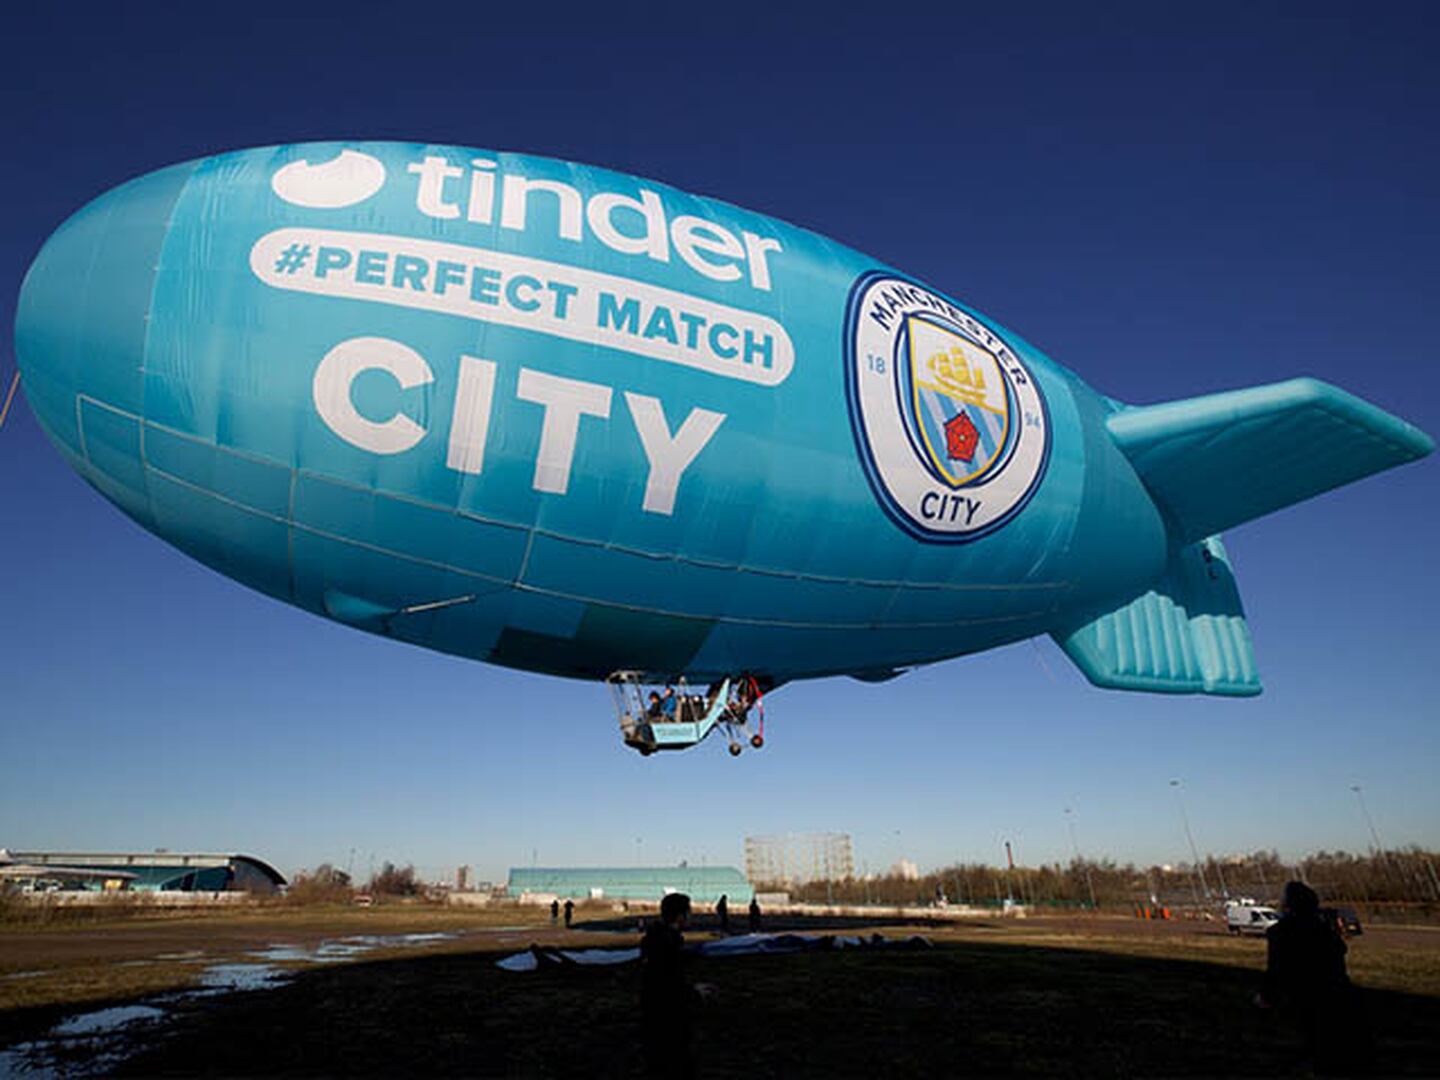 ¡Hicieron 'match'! Tinder es nuevo patrocinador del Manchester City